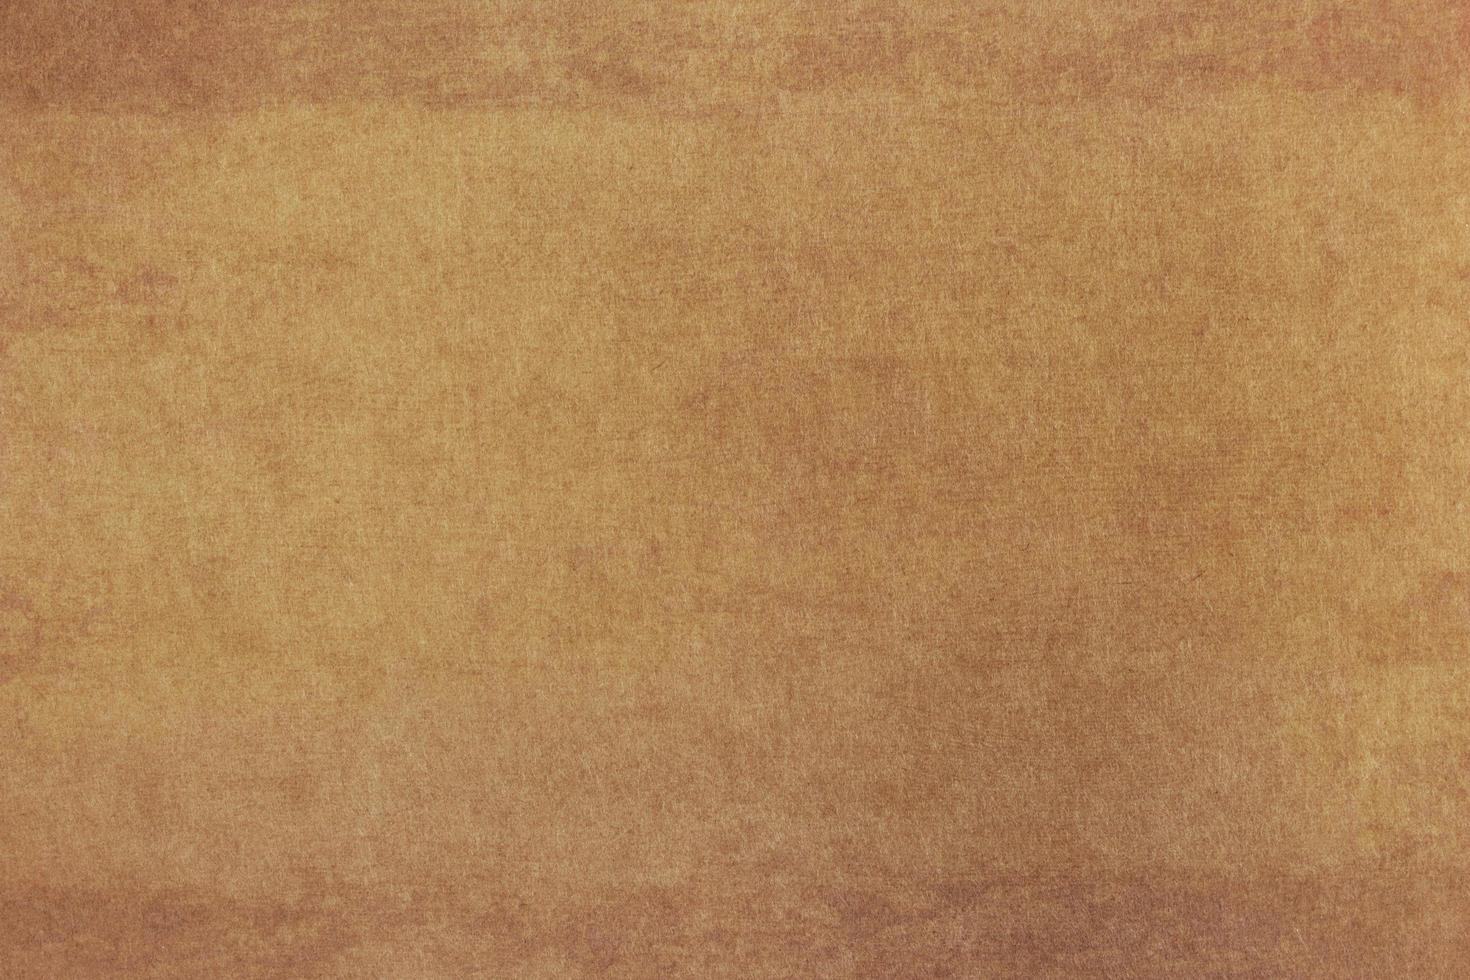 grunge marrón papel sábana textura foto